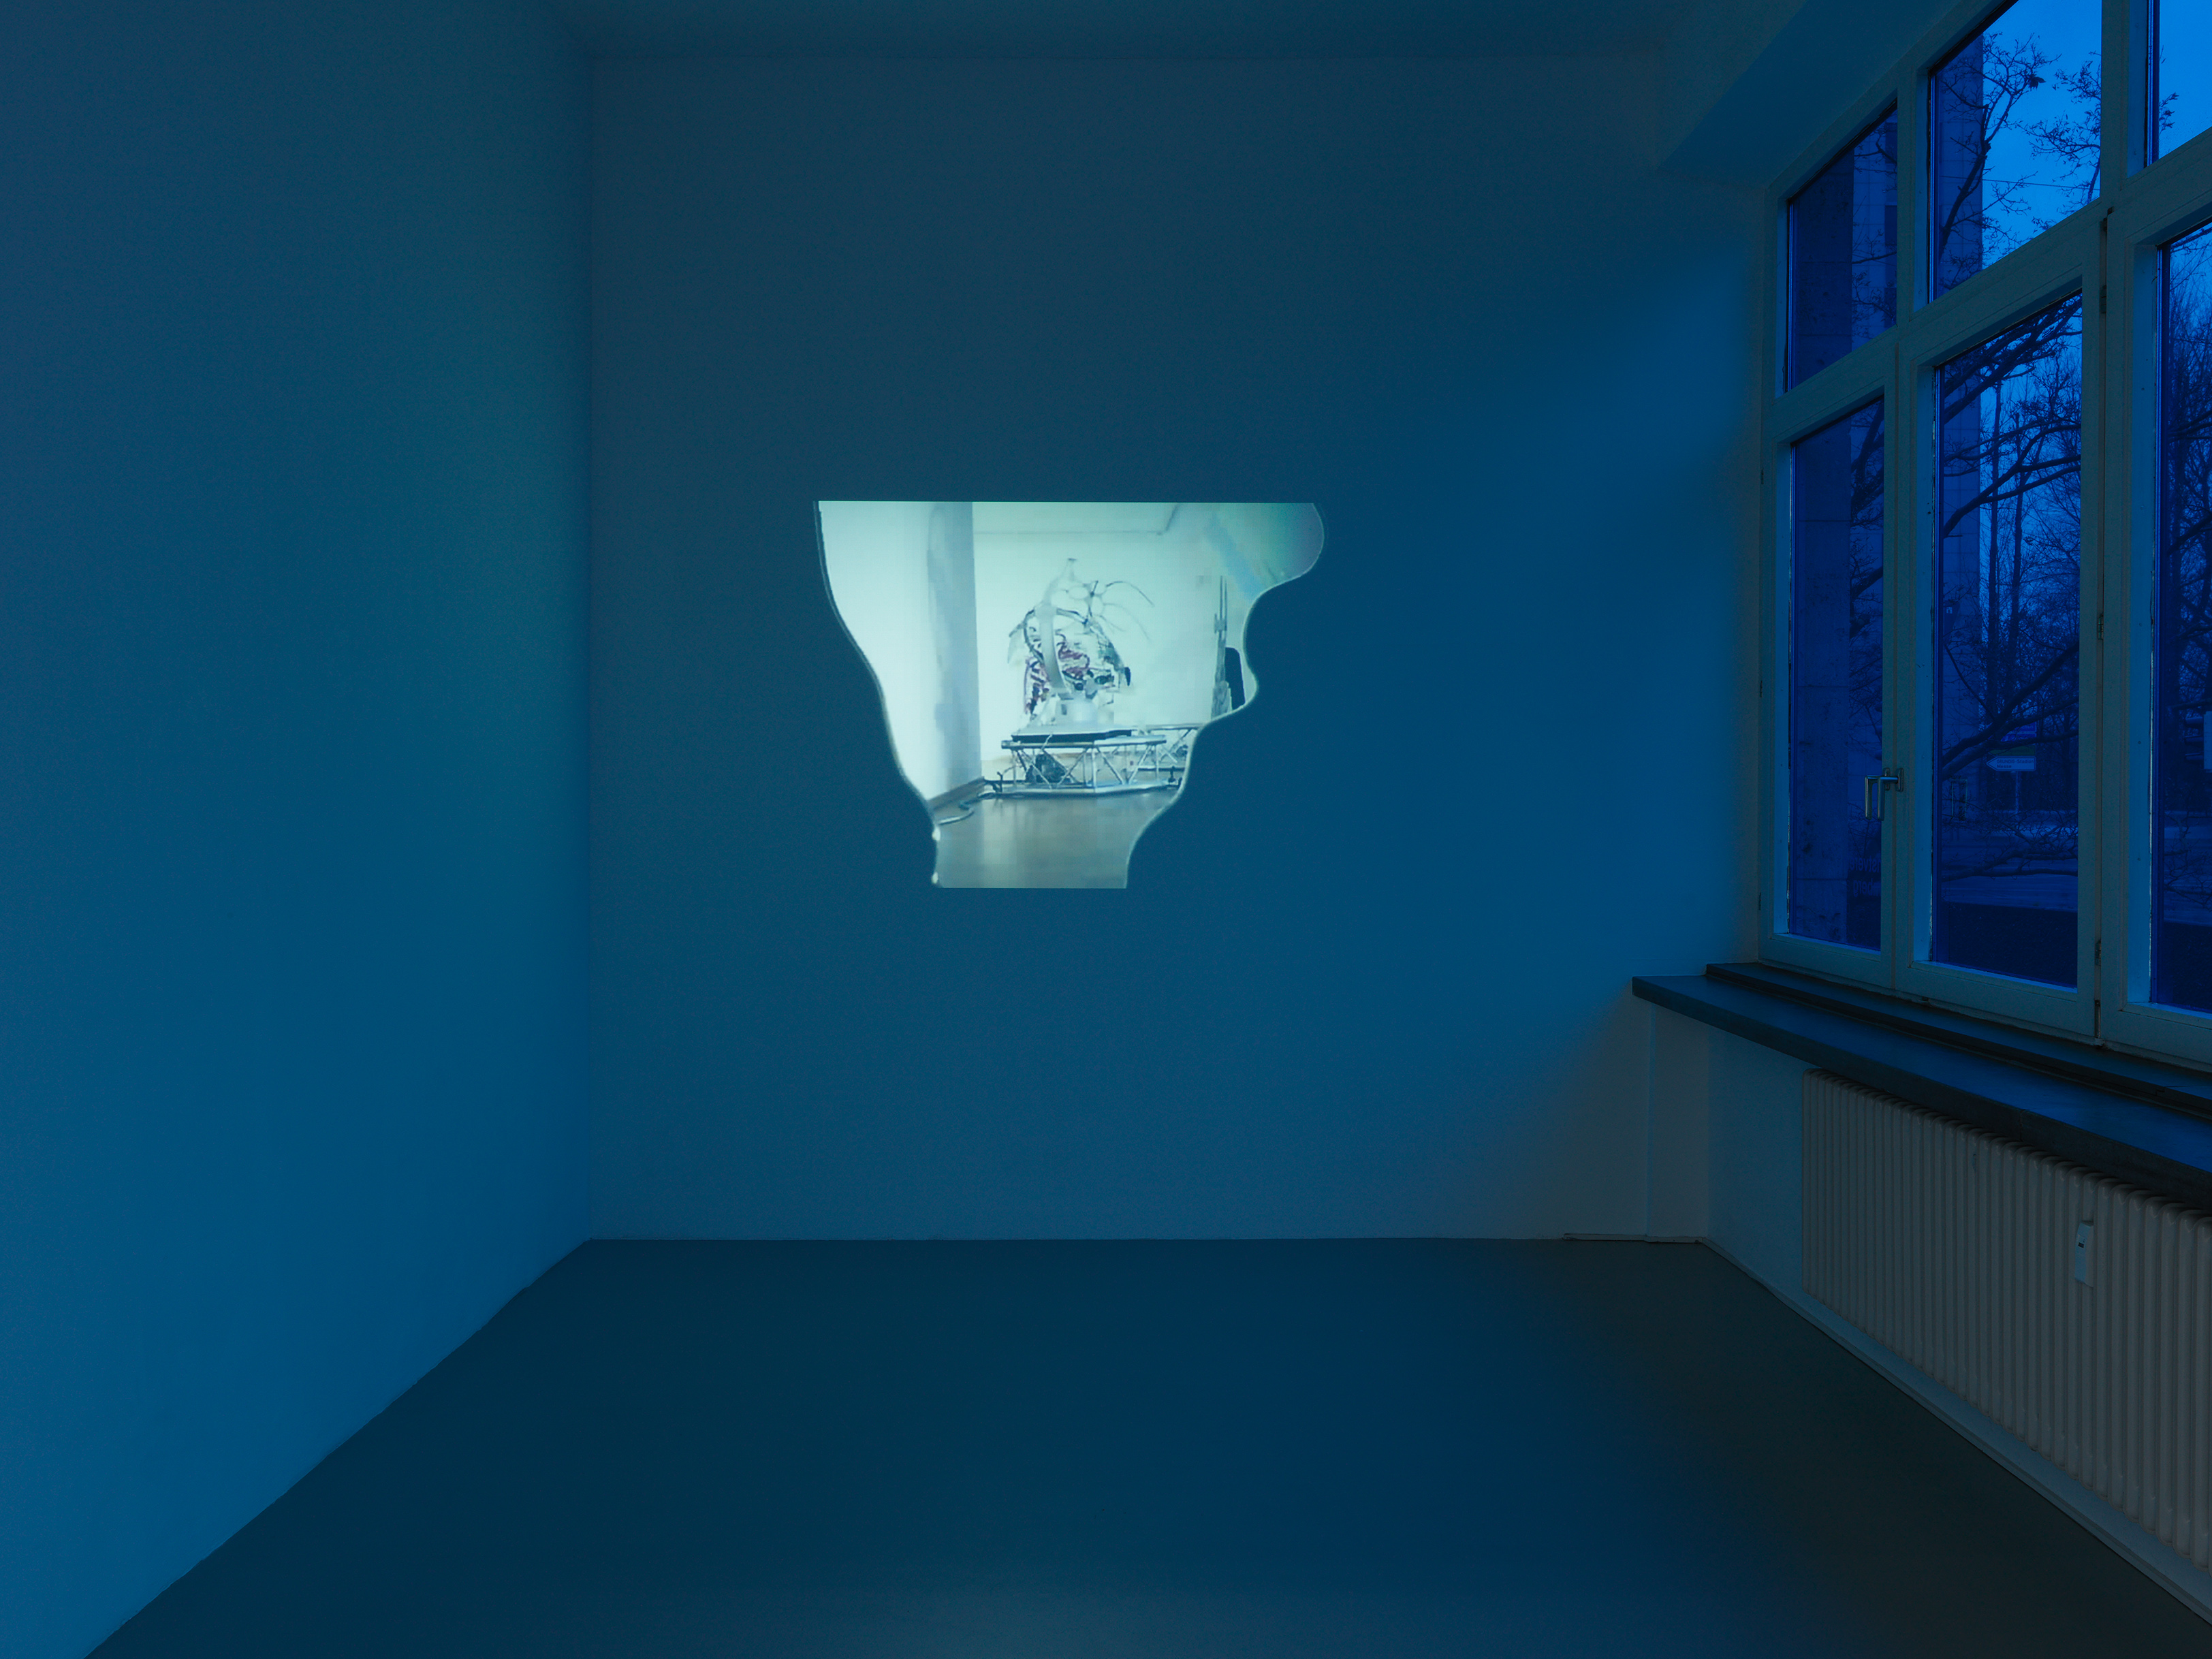 Image Credits: Installationsansicht, Katja Novitskova, »Transparenzen«, Kunstverein Nürnberg, 2015. Photo: Annette Kradisch, Nürnberg. Courtesy the artist; Kraupa-Tuskany Zeidler, Berlin